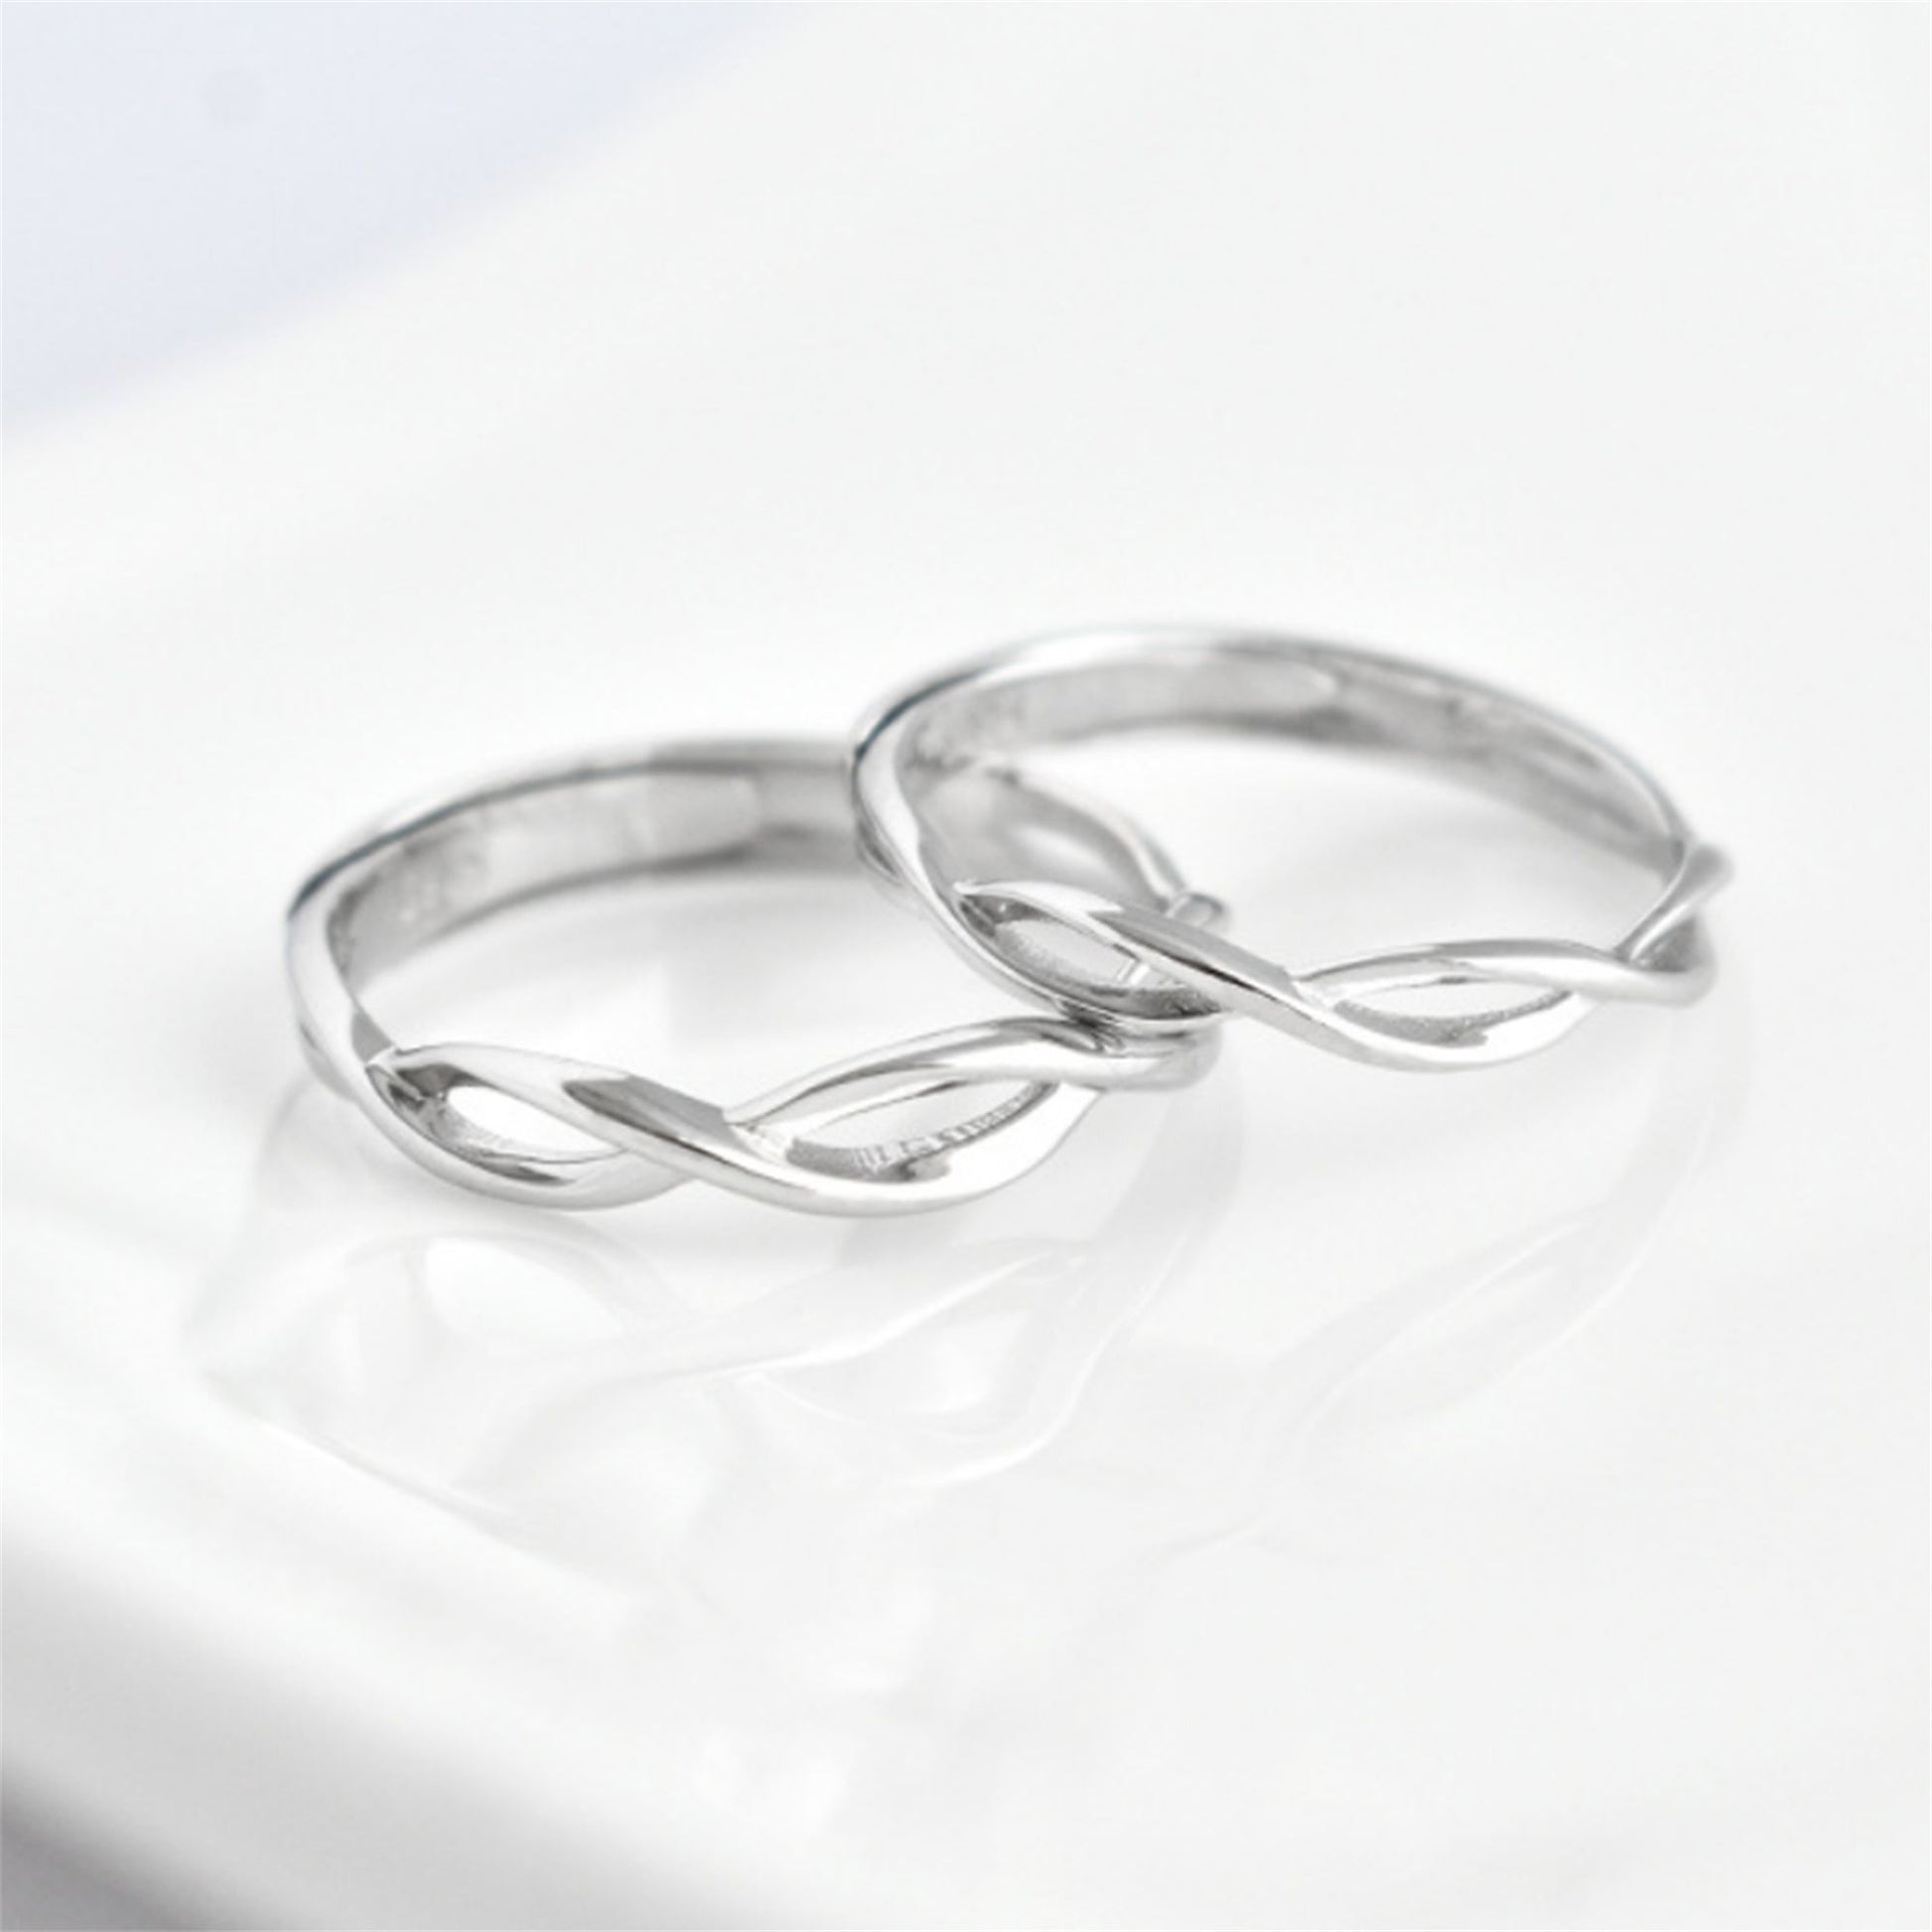 Sterling Silver Couple Rings Infinity Eternity Love Twist Knot Criss Cross Boxed - sugarkittenlondon